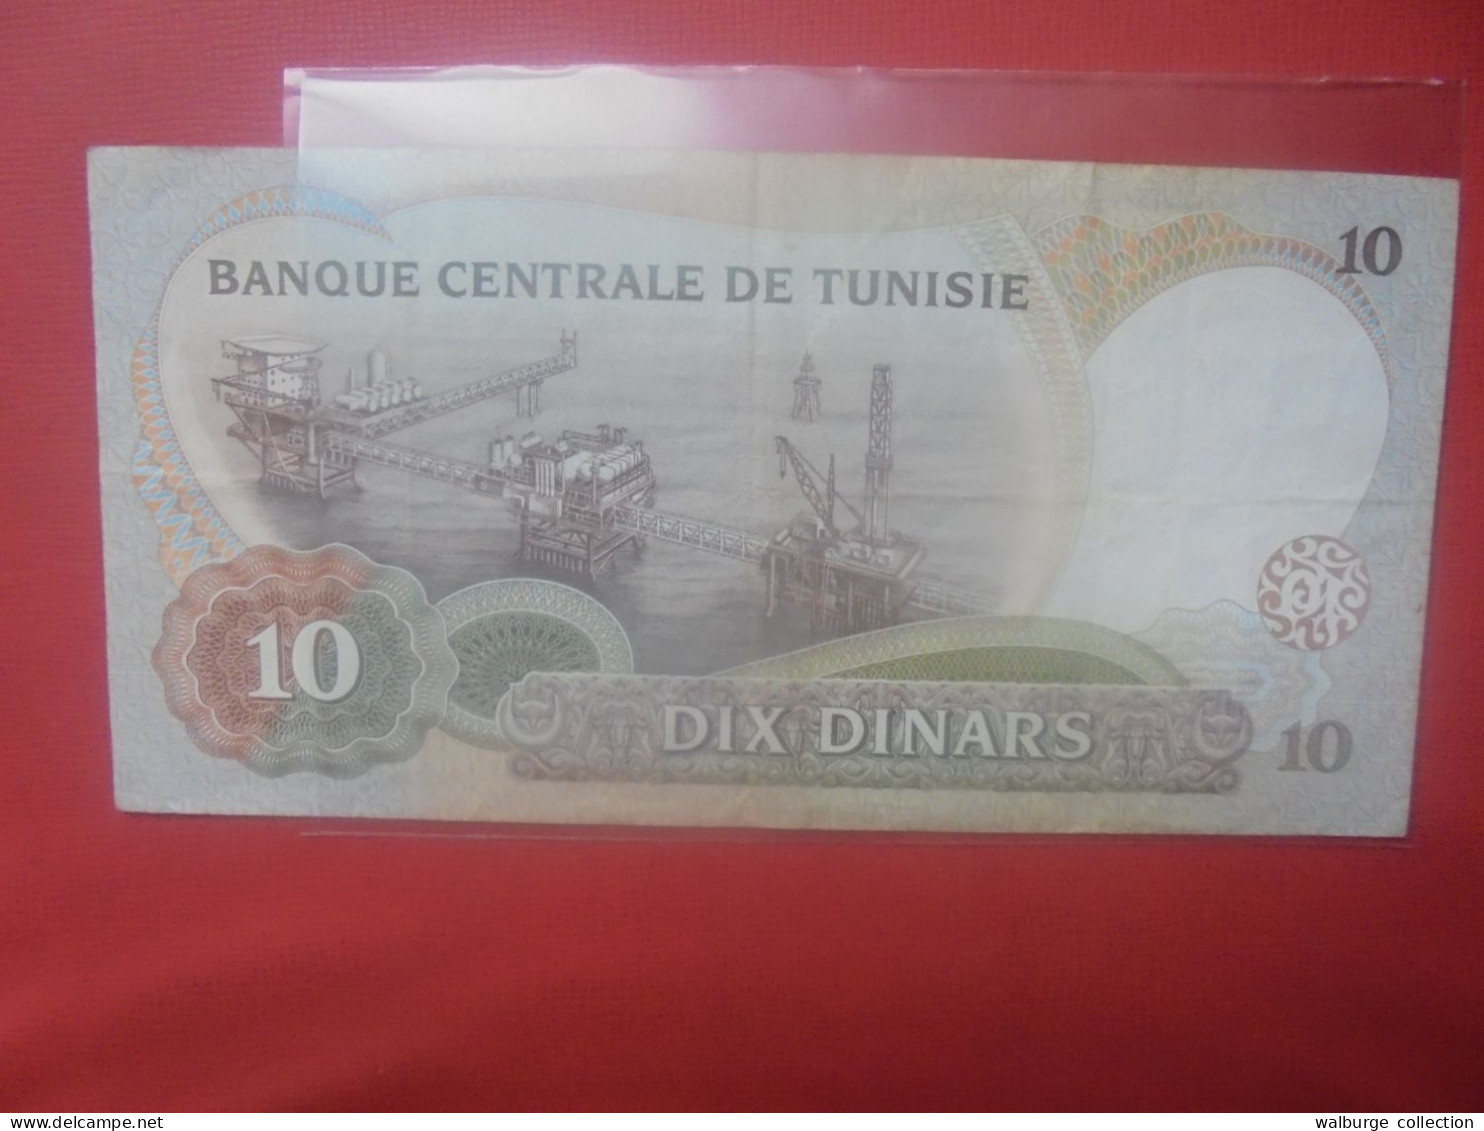 TUNISIE 10 DINARS 1986 Circuler (B.31) - Tunisia